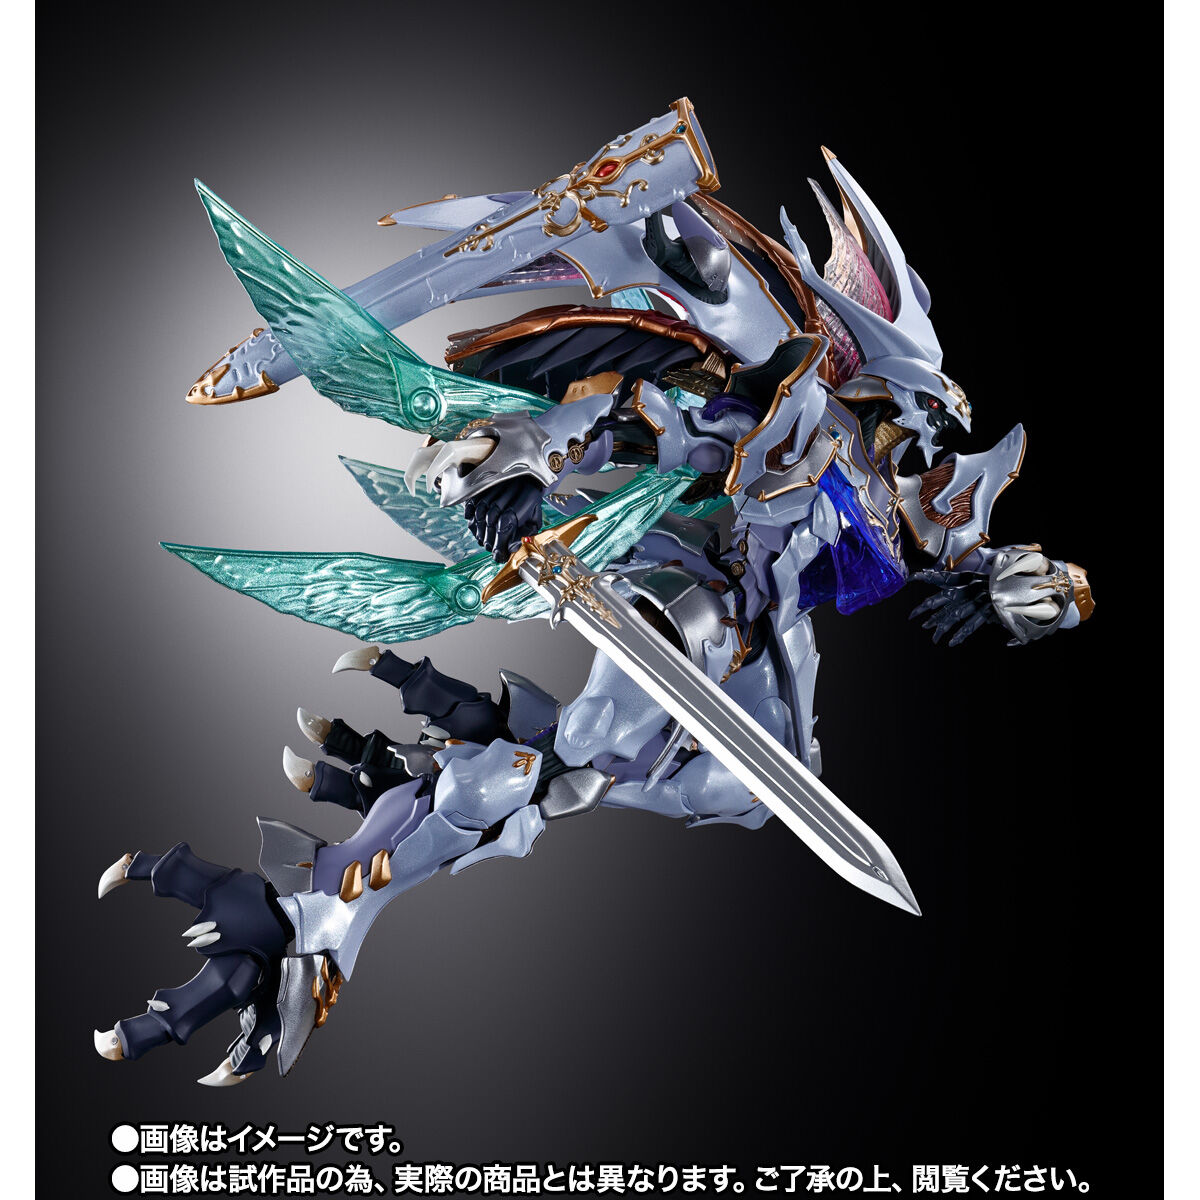 【限定販売】METAL BUILD DRAGON SCALE『サーバイン』聖戦士ダンバイン 可動フィギュア-002